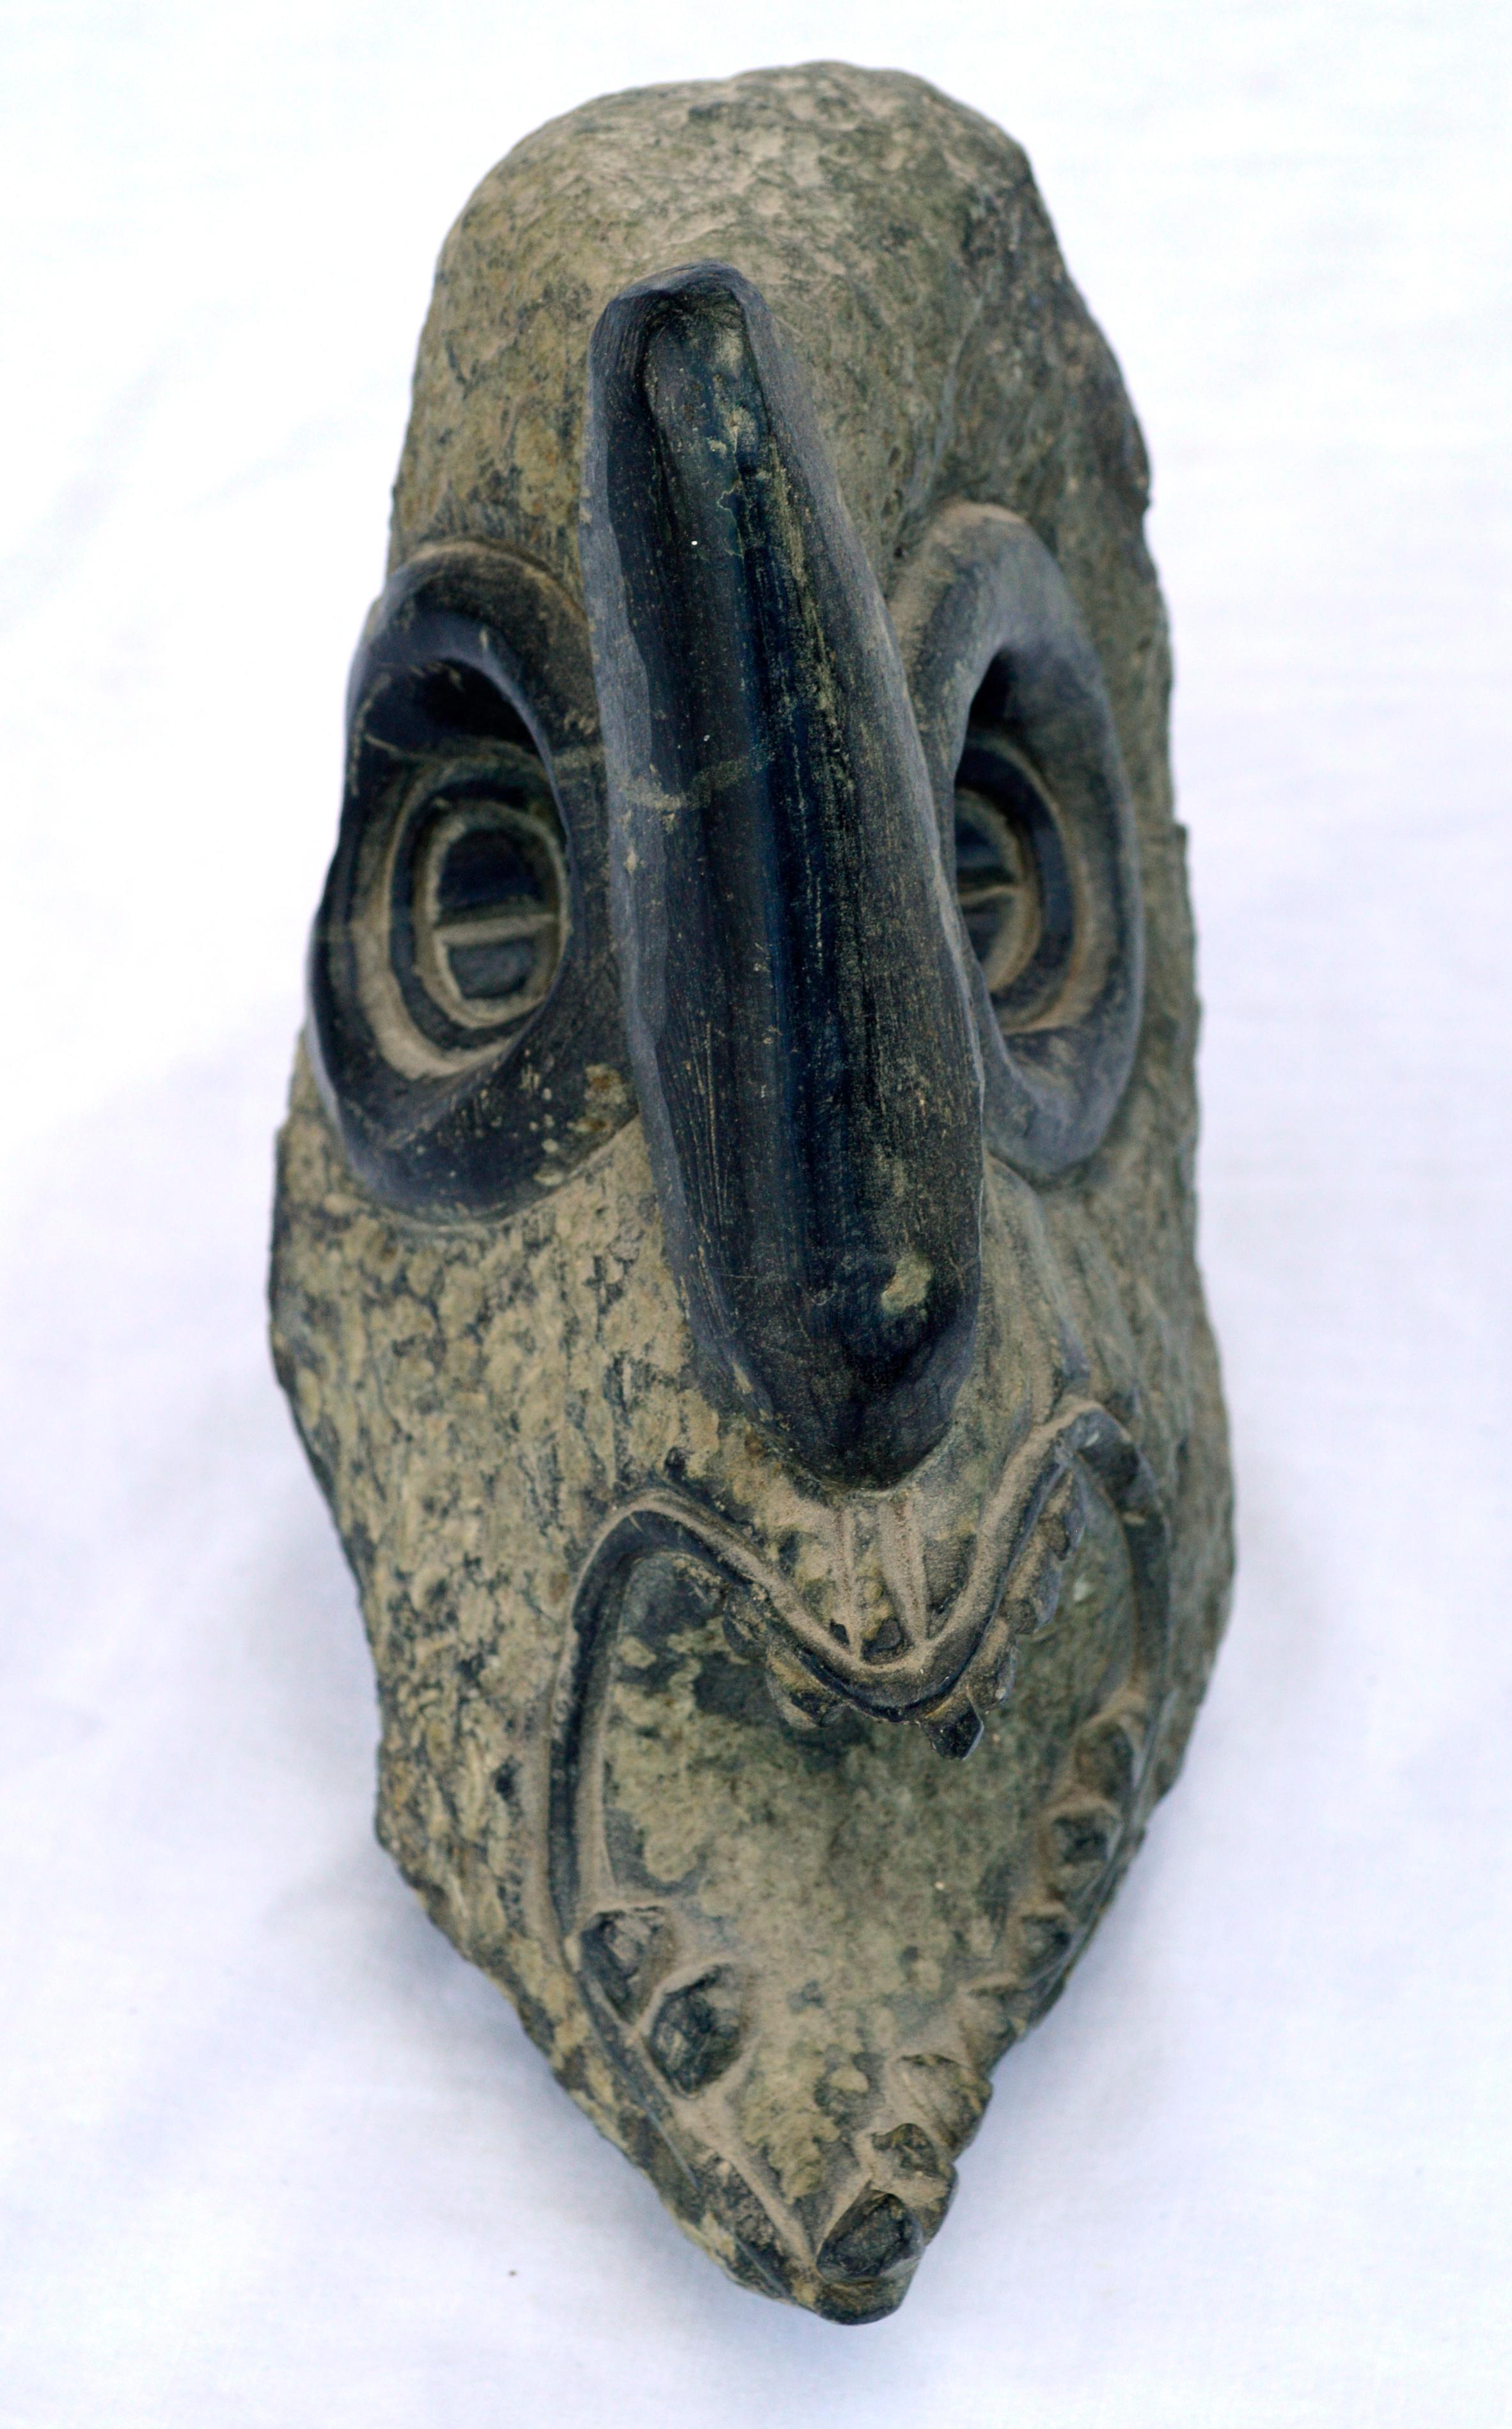 Sculpture abstraite figurative évocatrice de la tête d'une créature tribale par Nathaniel Sirles (américain, né en 1954). Signé et daté 